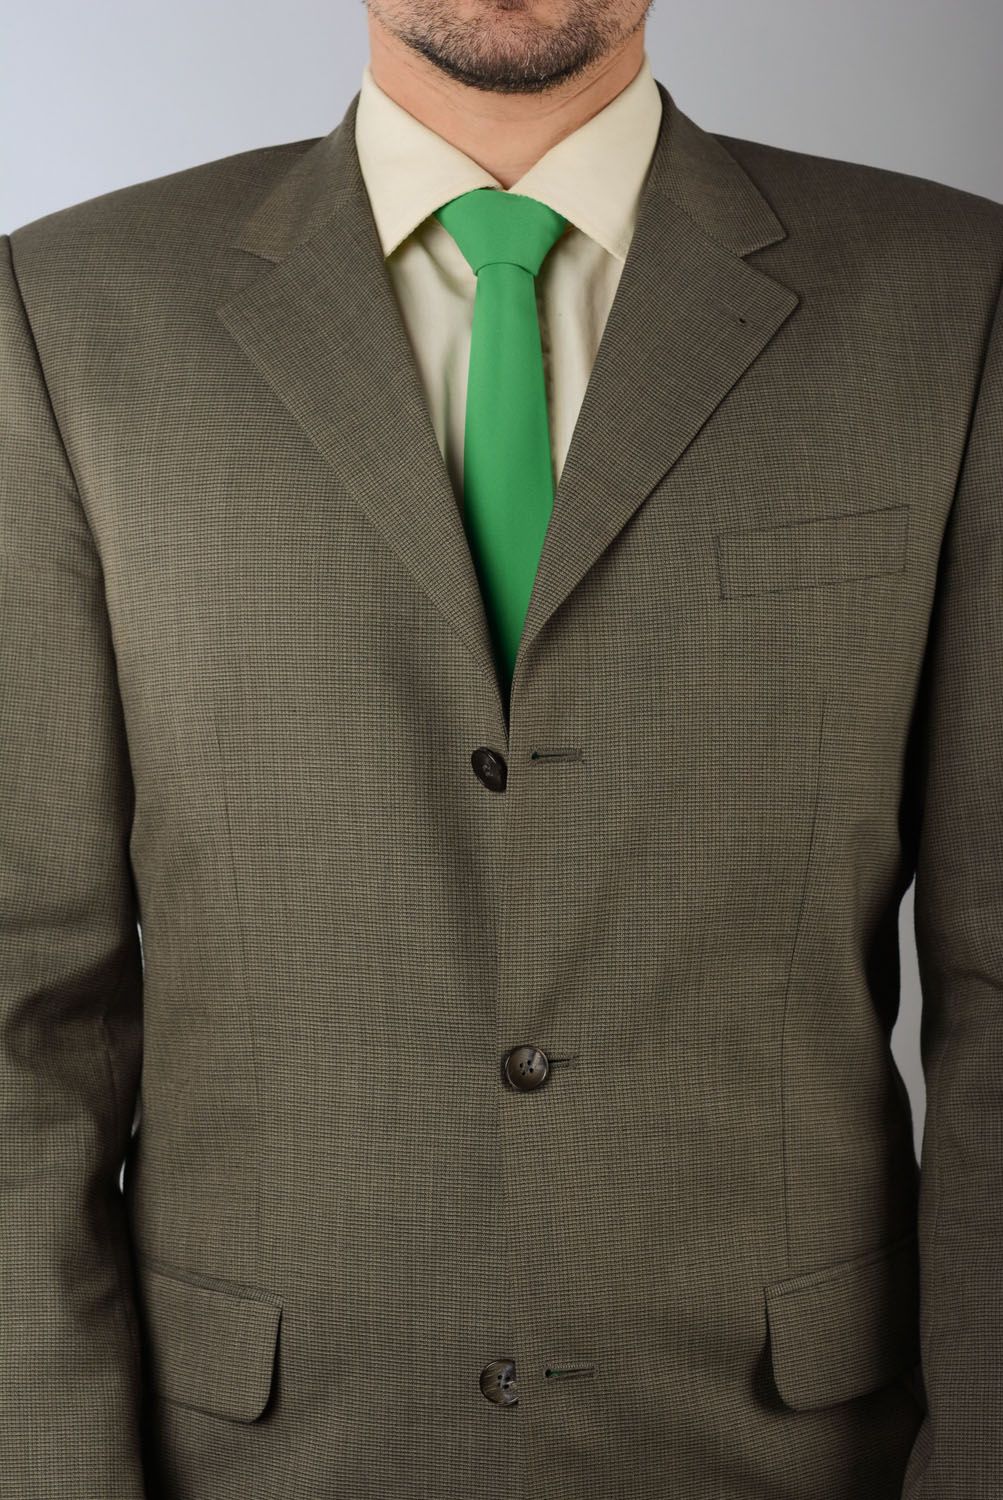 Зеленый галстук из габардина фото 4